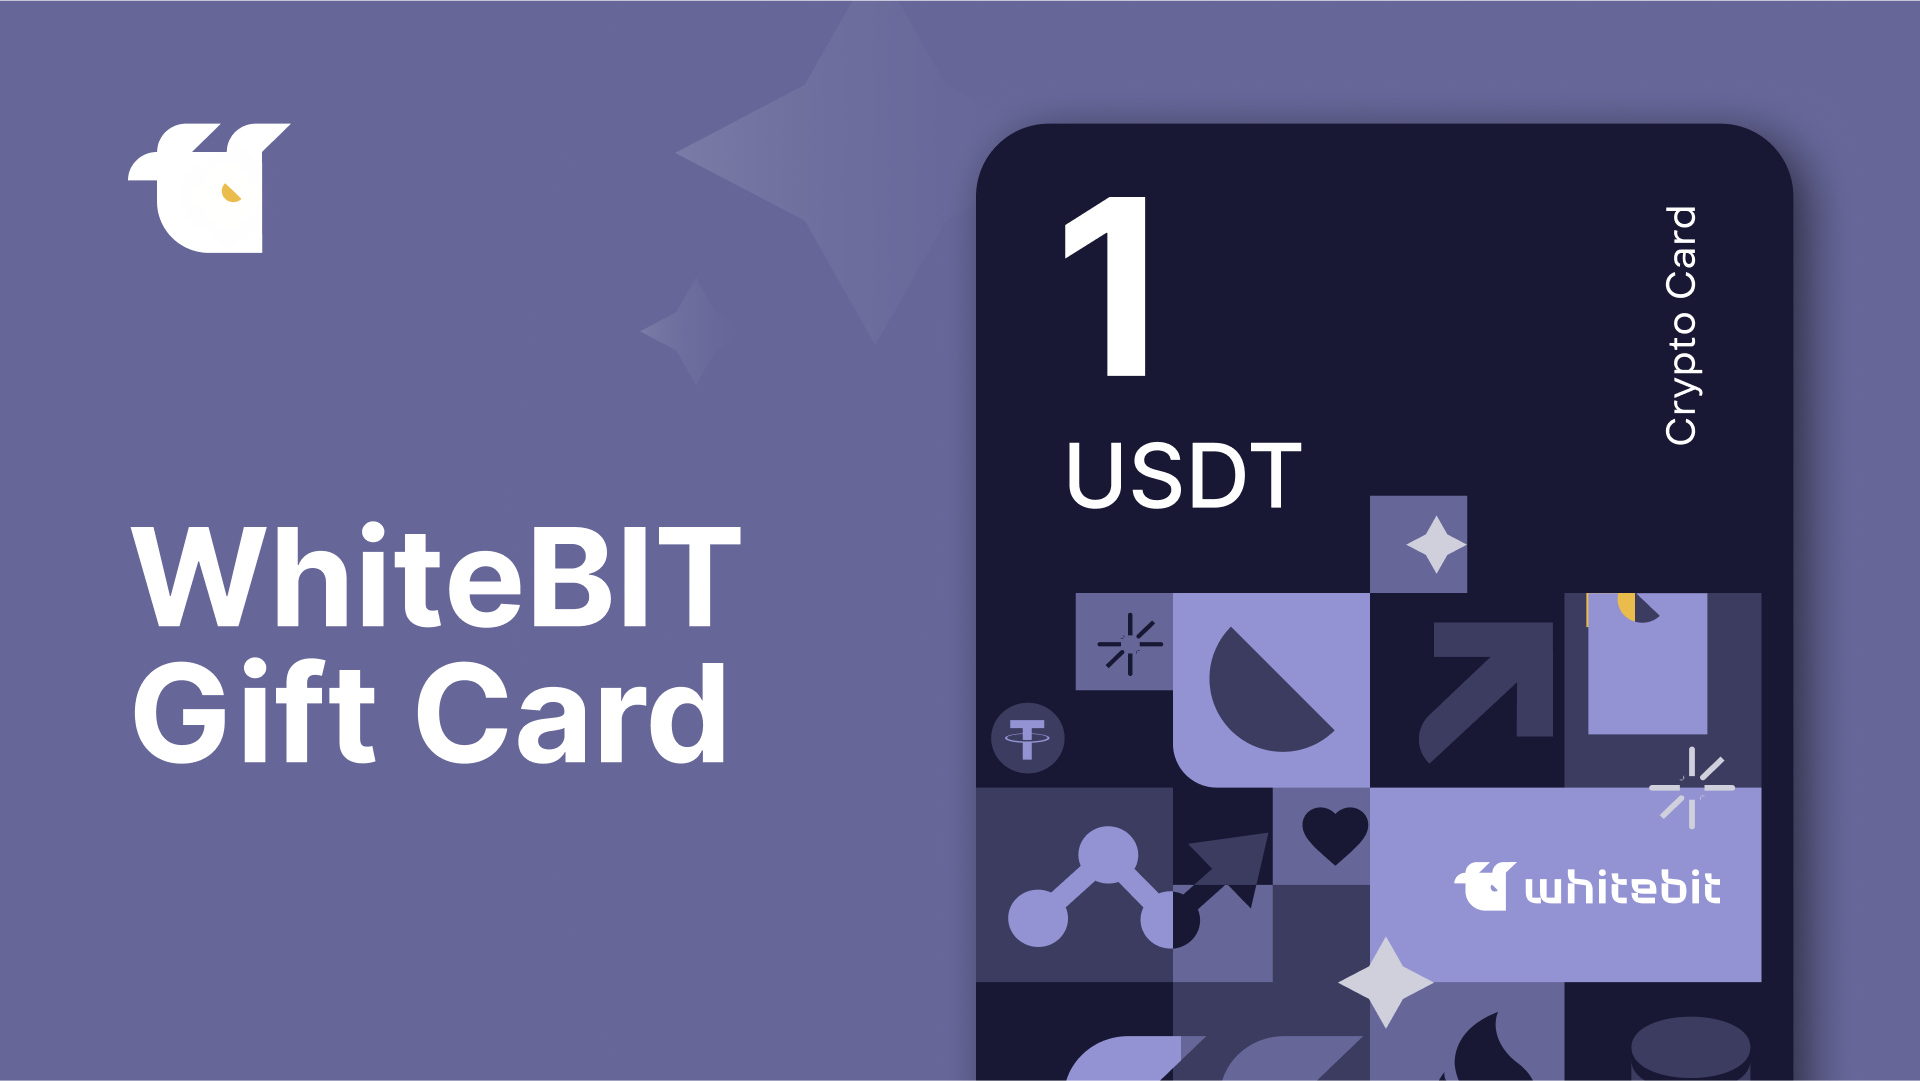 WhiteBIT 1 USDT Gift Card (1.33$)